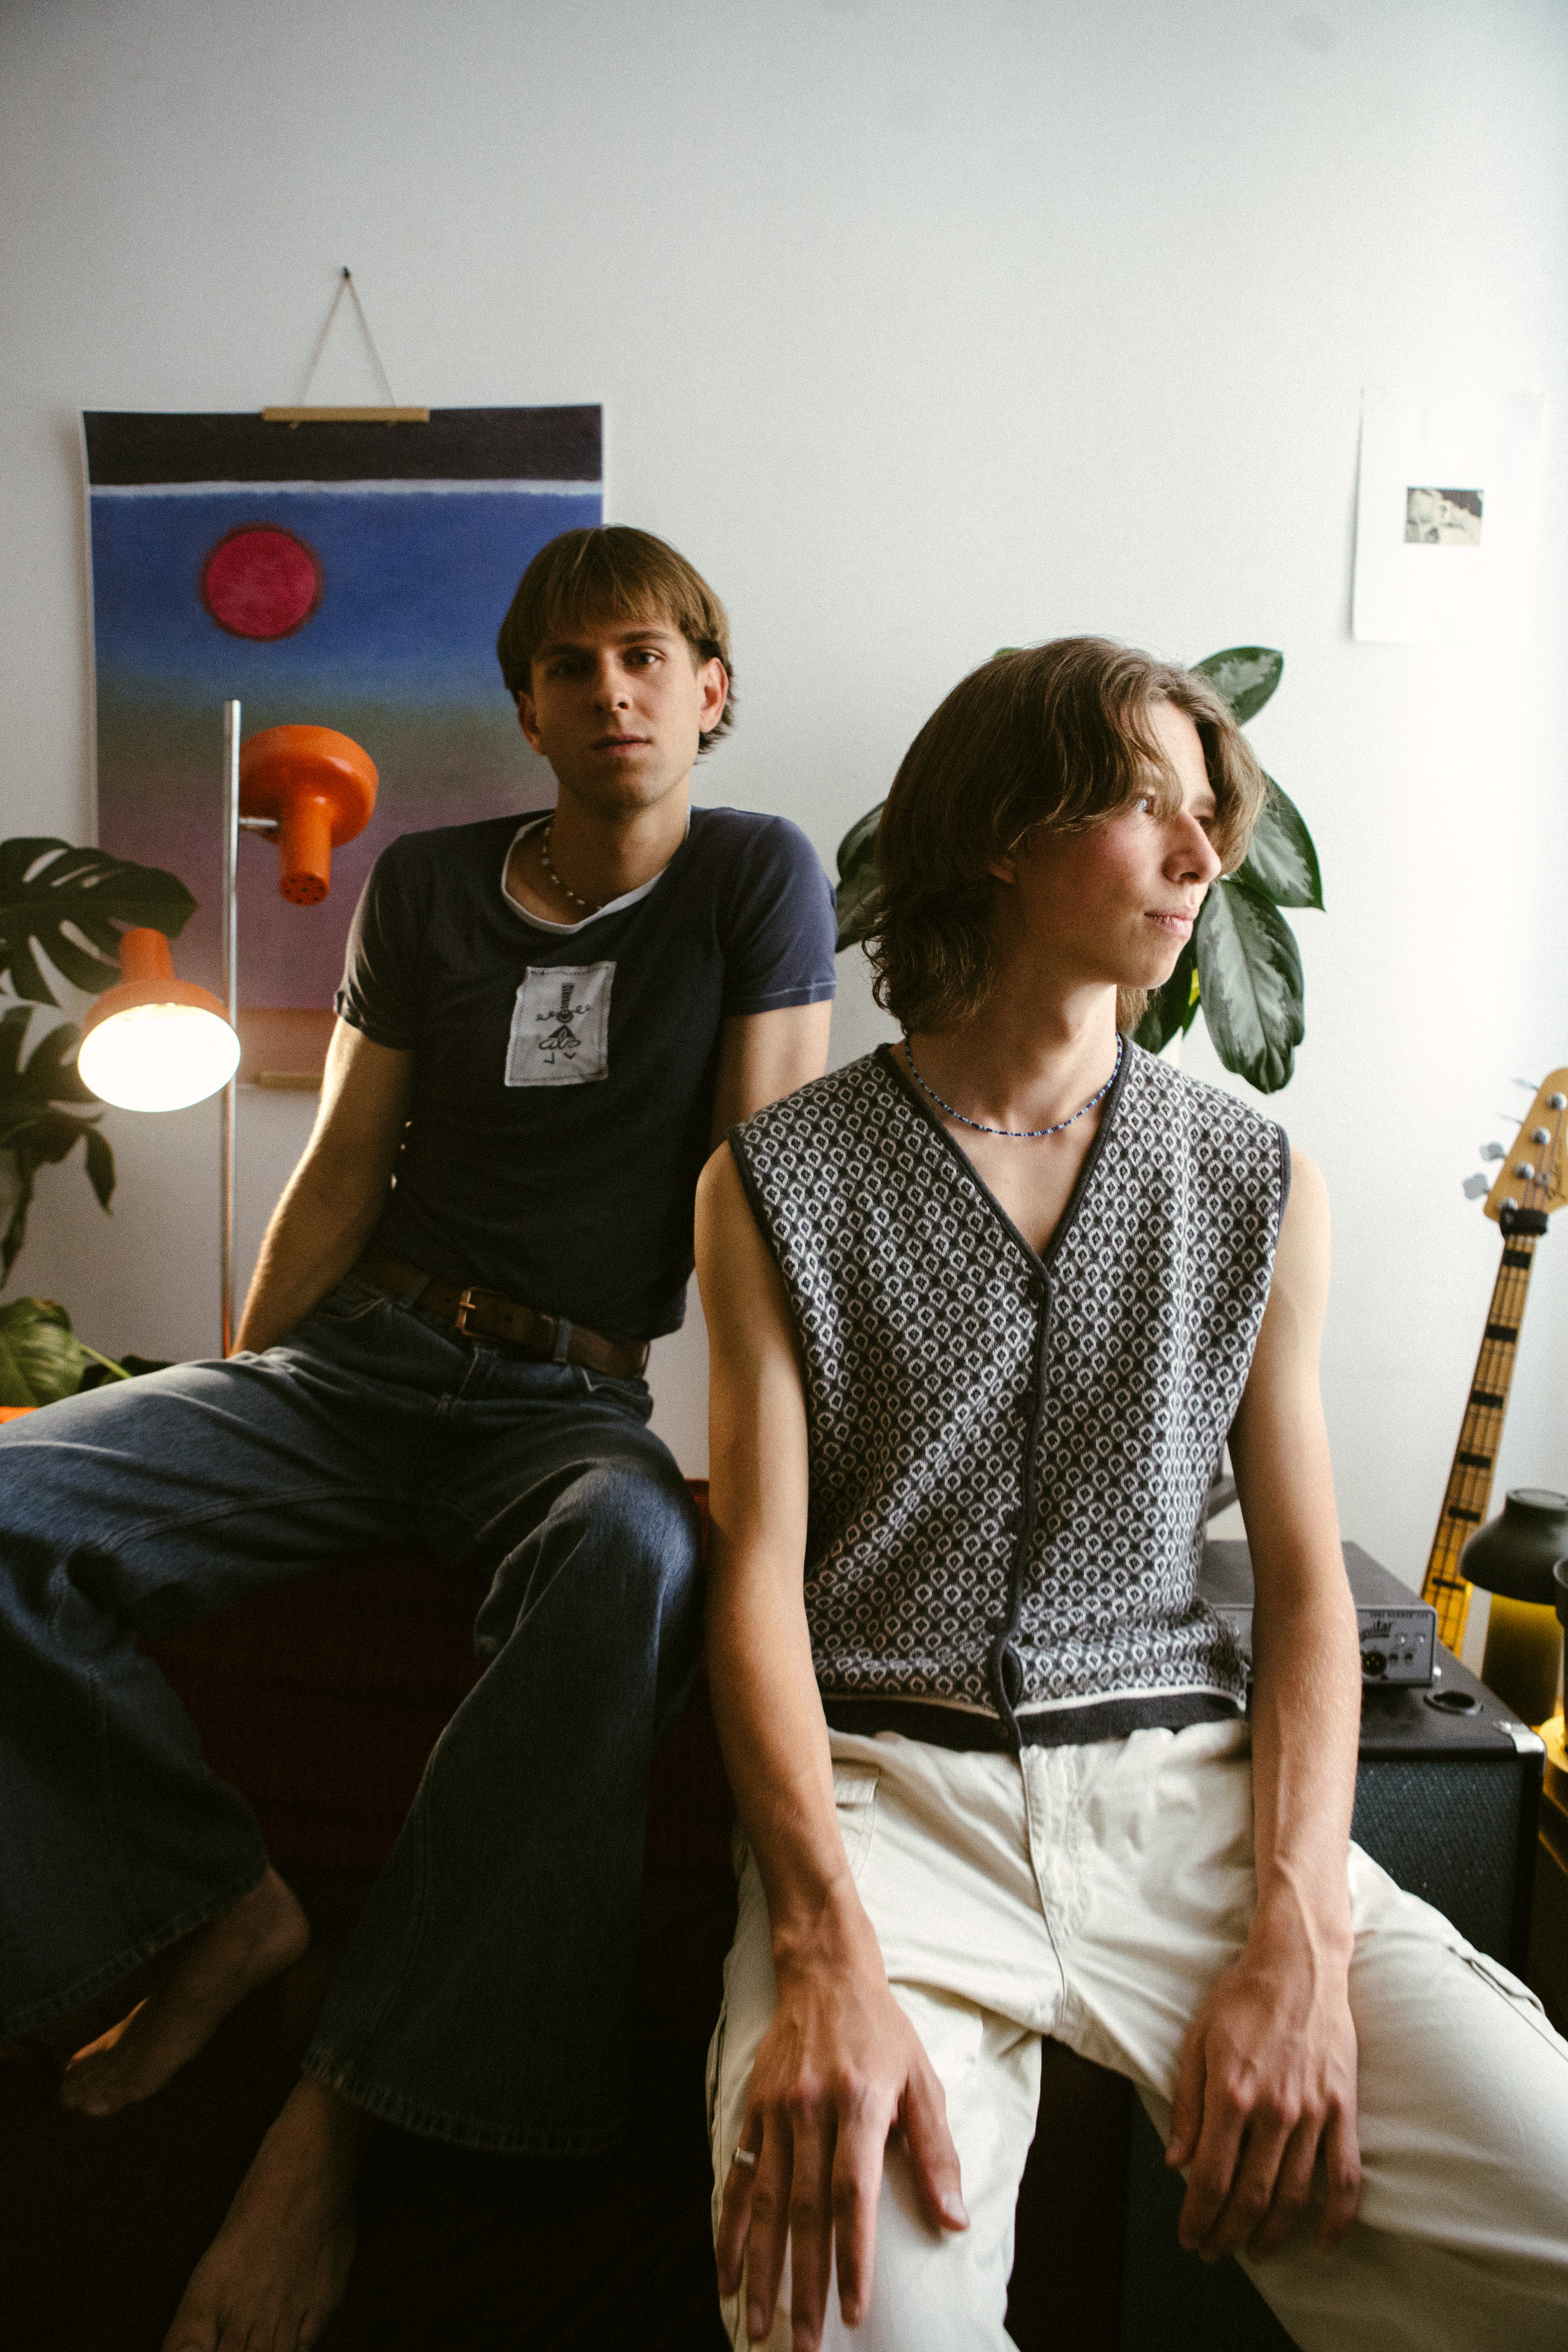 Auf dem Bild sind die beiden Bandmitglieder Josch und Finn von Zimmer90 zu sehen, die in einem Raum in gemütlicher Atmosphäre entspannt in Richtung der Kamera sitzen.